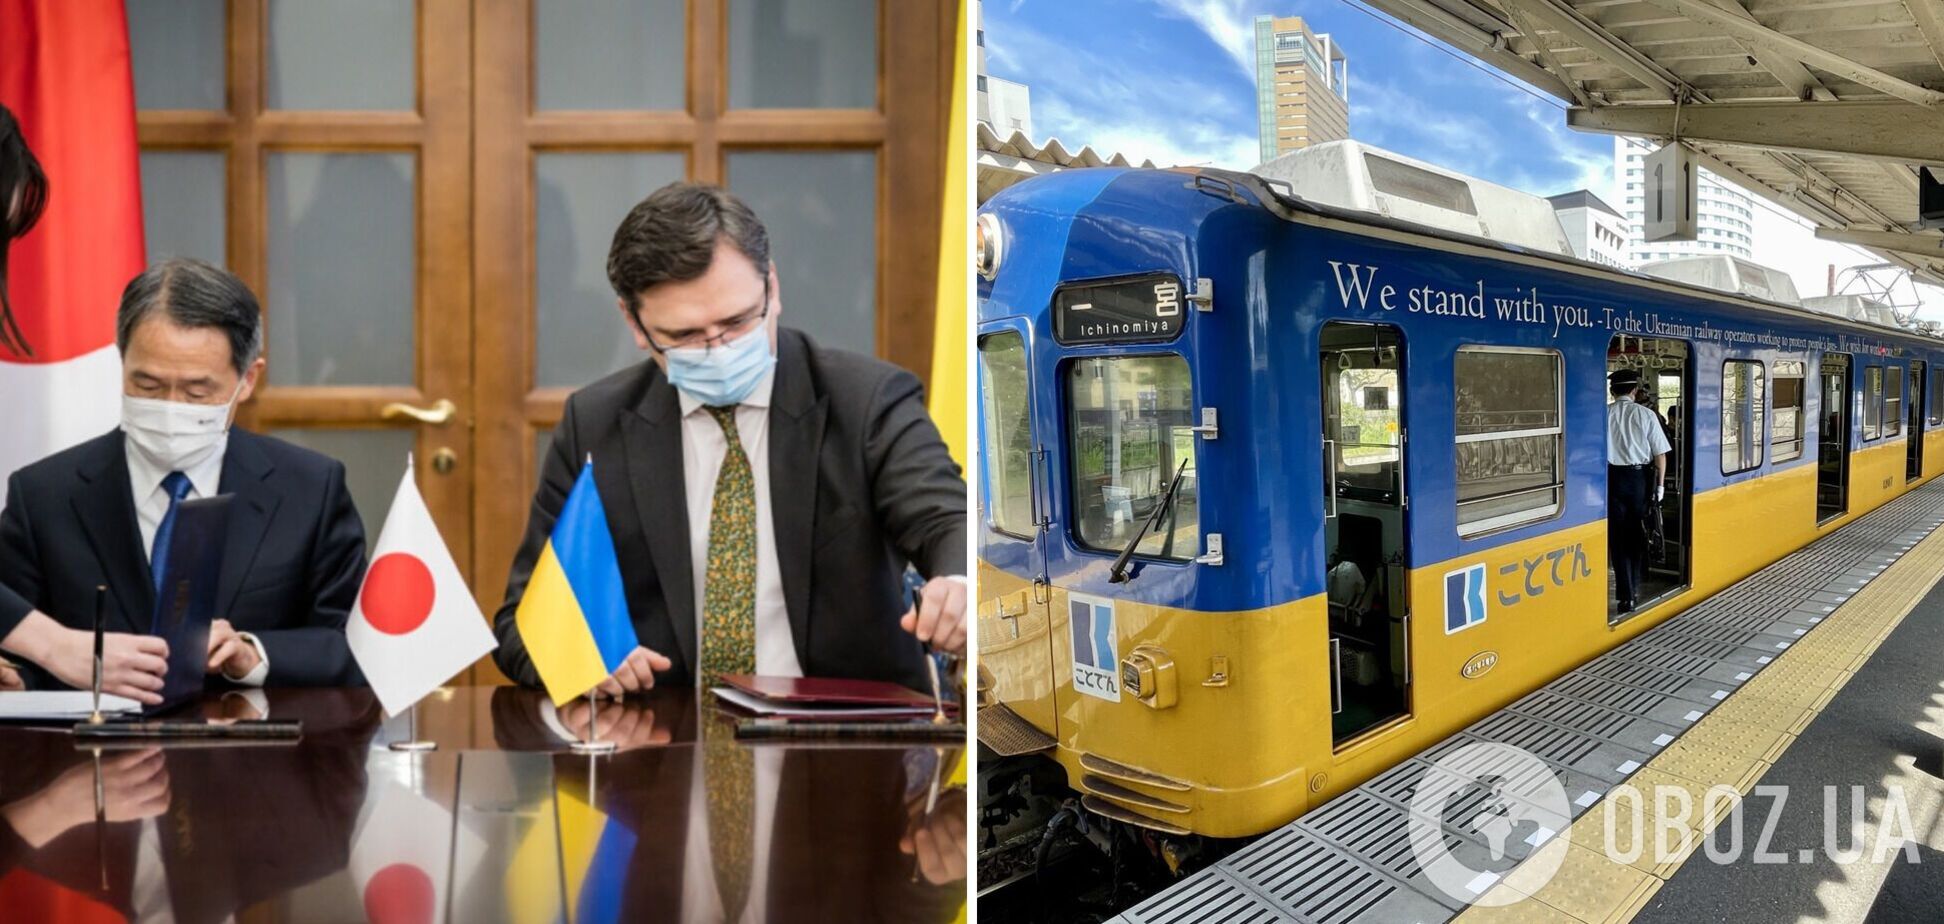 'We stand with you': в Японії підтримали Україну, запустивши потяг у кольорах українського прапора. Фото 